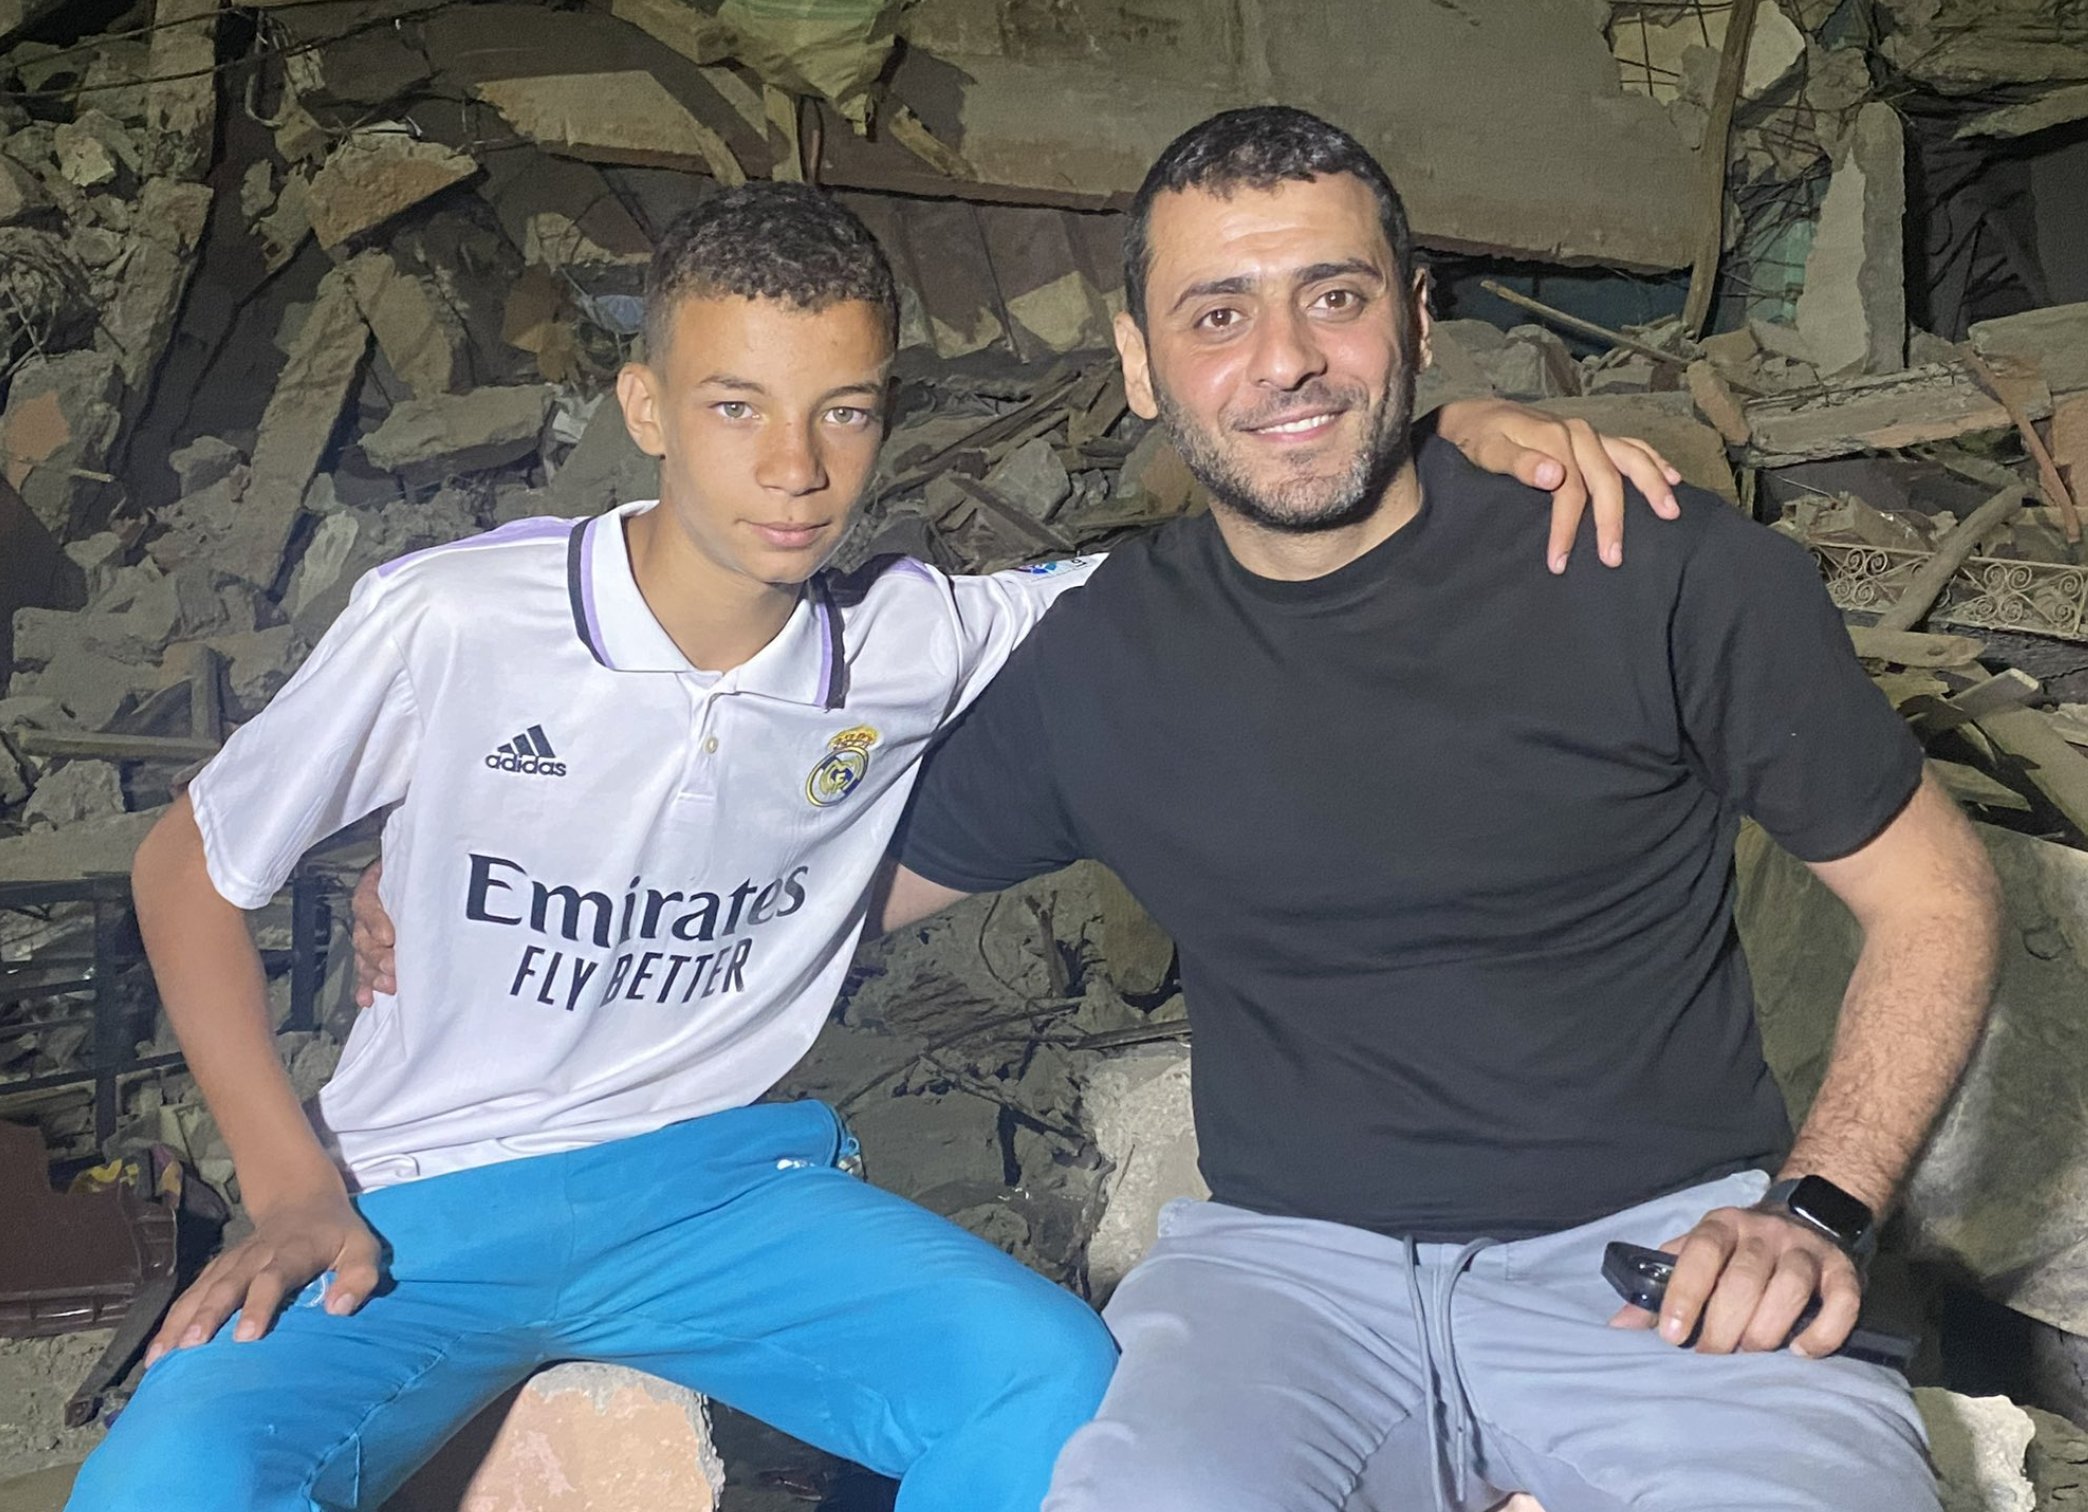 Real Madrid cumple sueño de niño víctima del terremoto en Marruecos